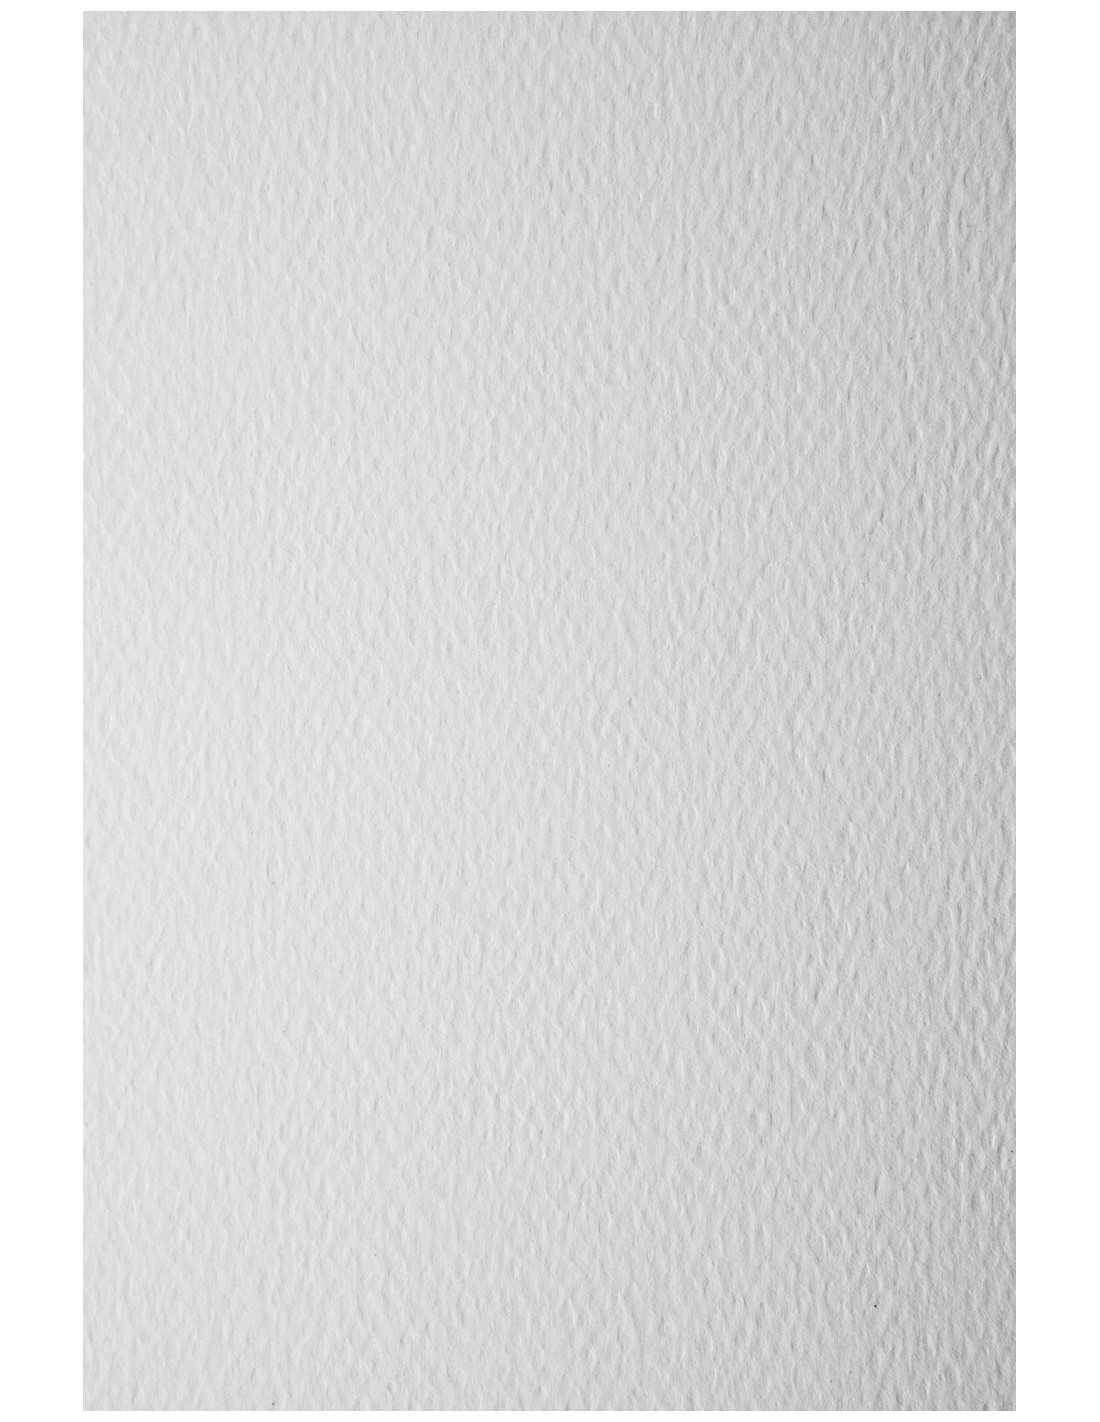 Papier ozdobny fakturowany Prisma 120g Bianco biały pak. 20A5